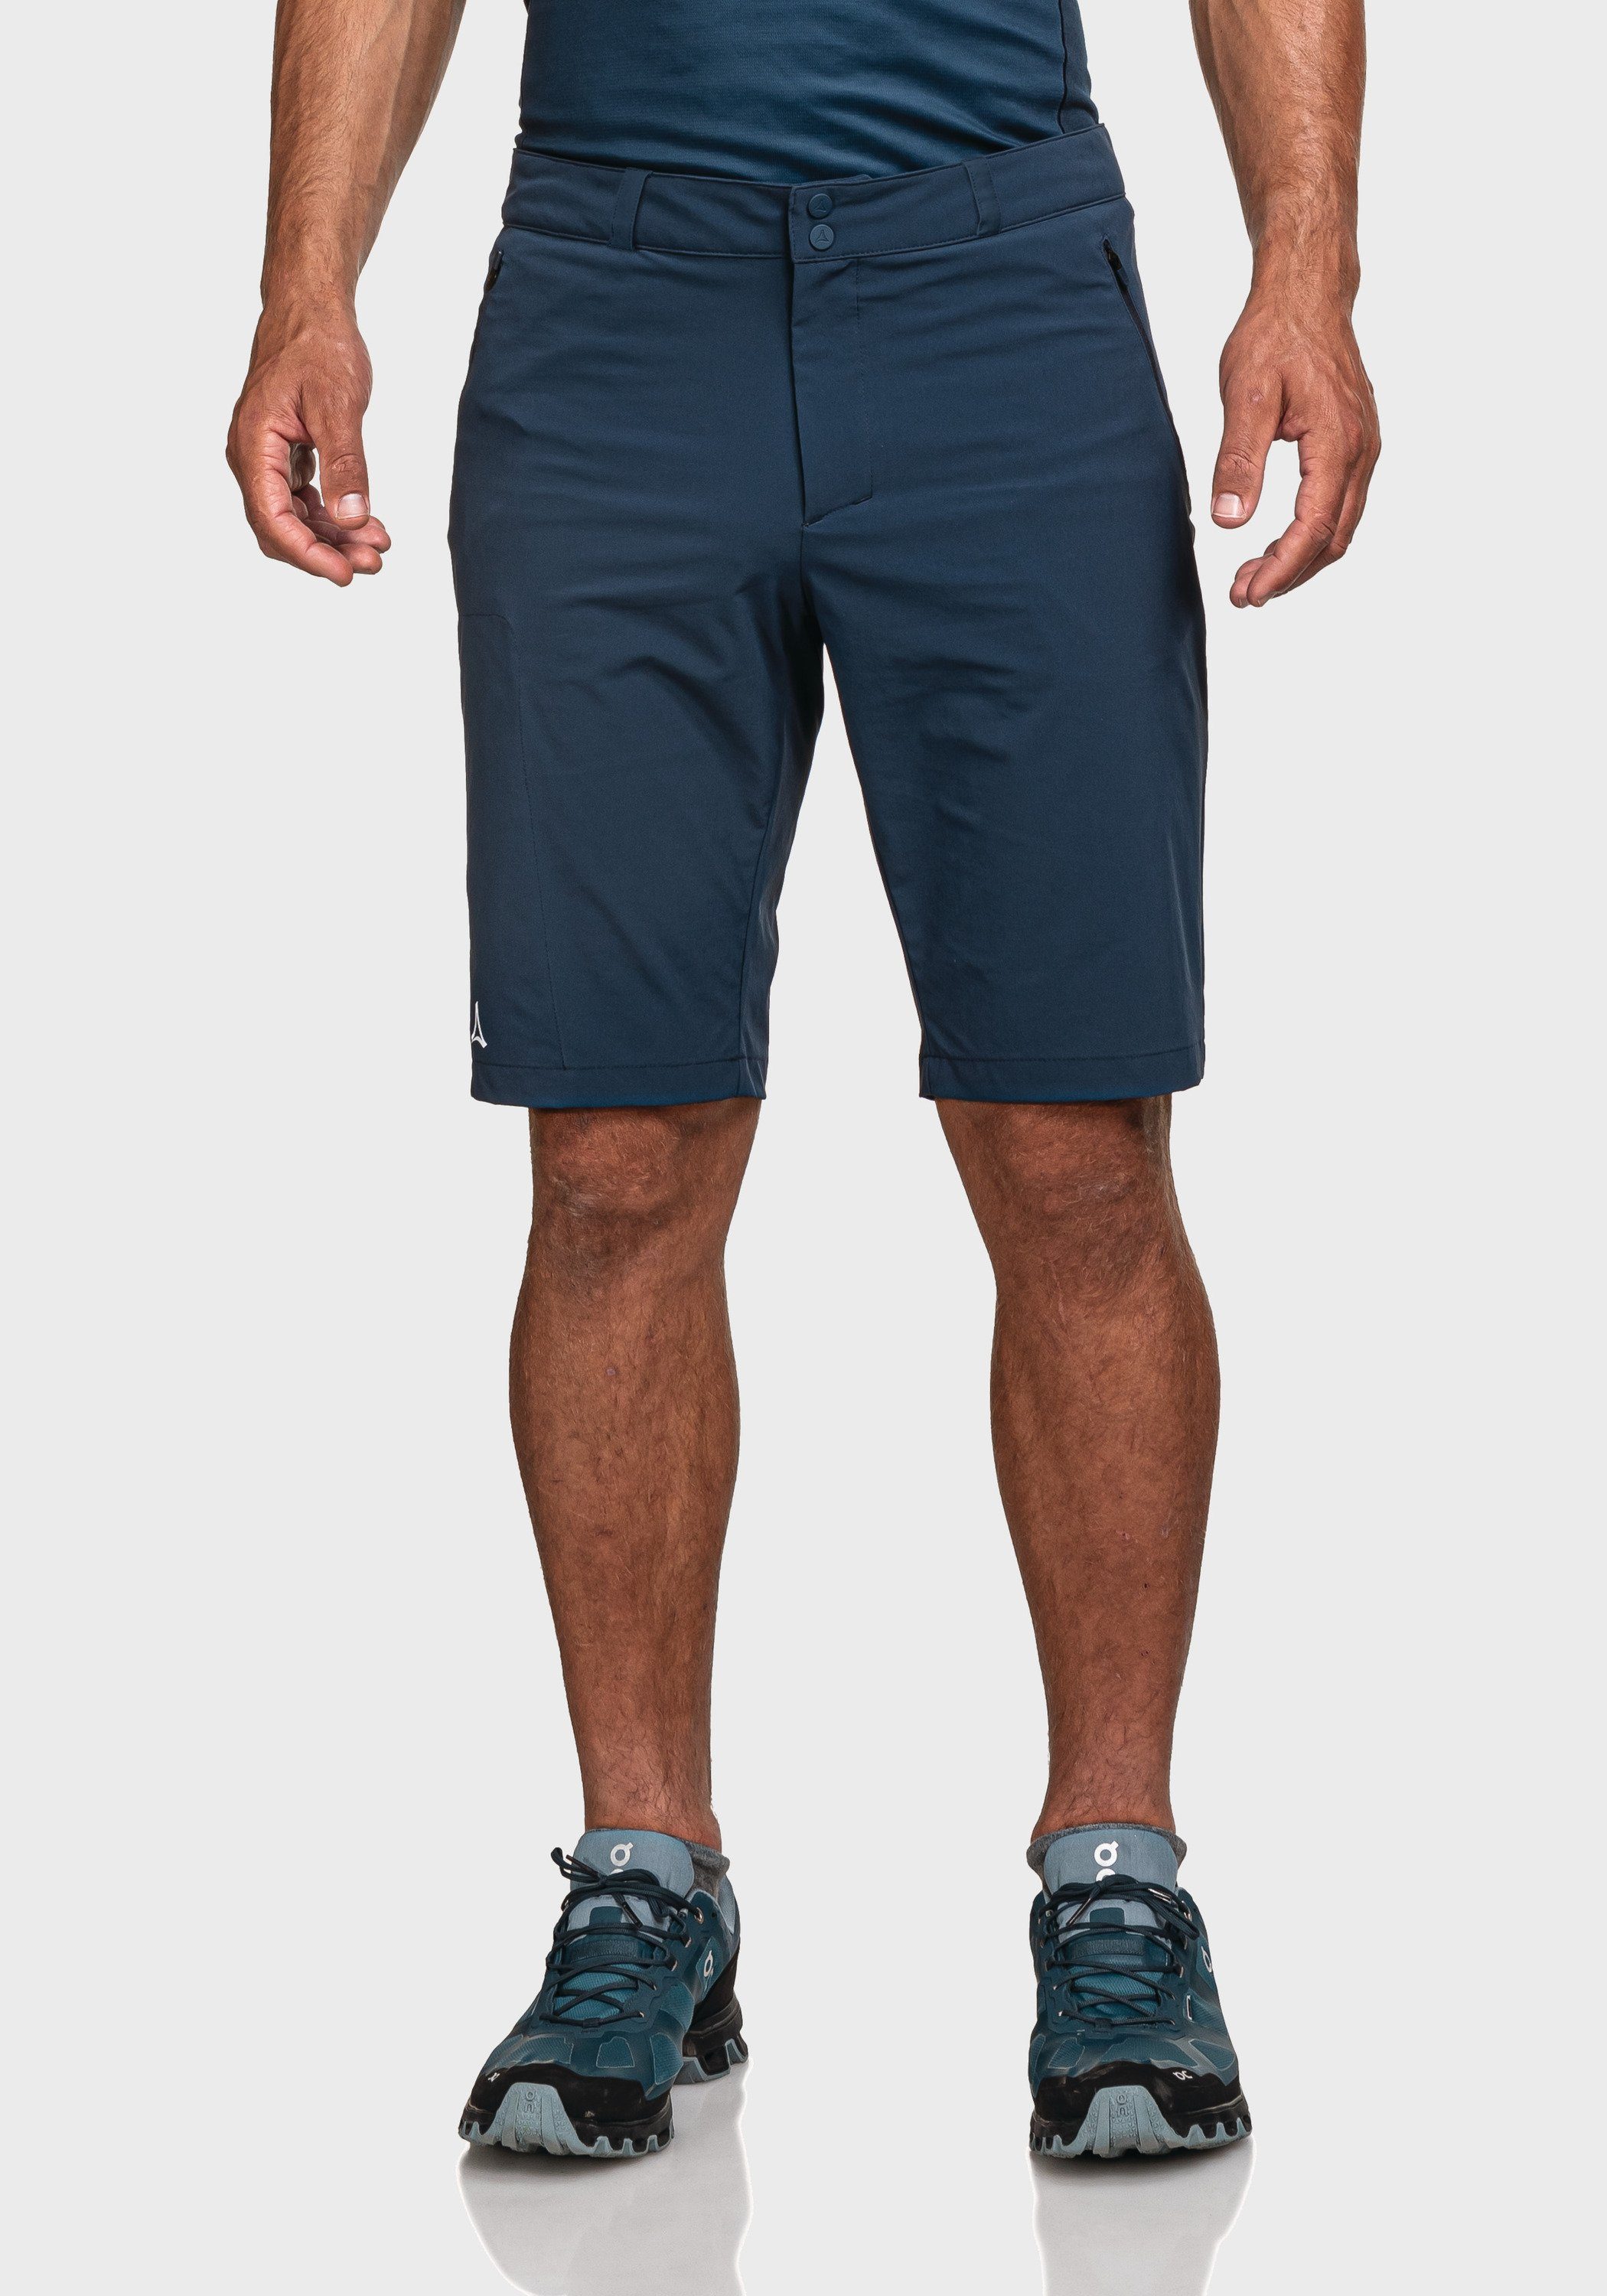 M Bermudas Shorts blau Schöffel Hestad